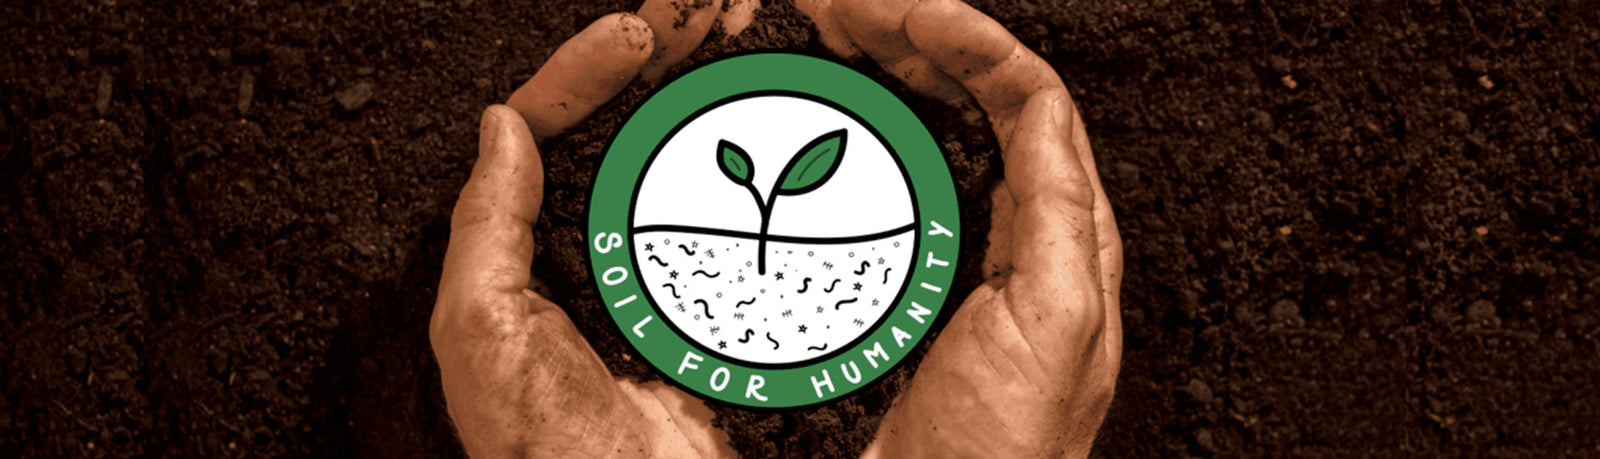 Soil for Humanity Blog